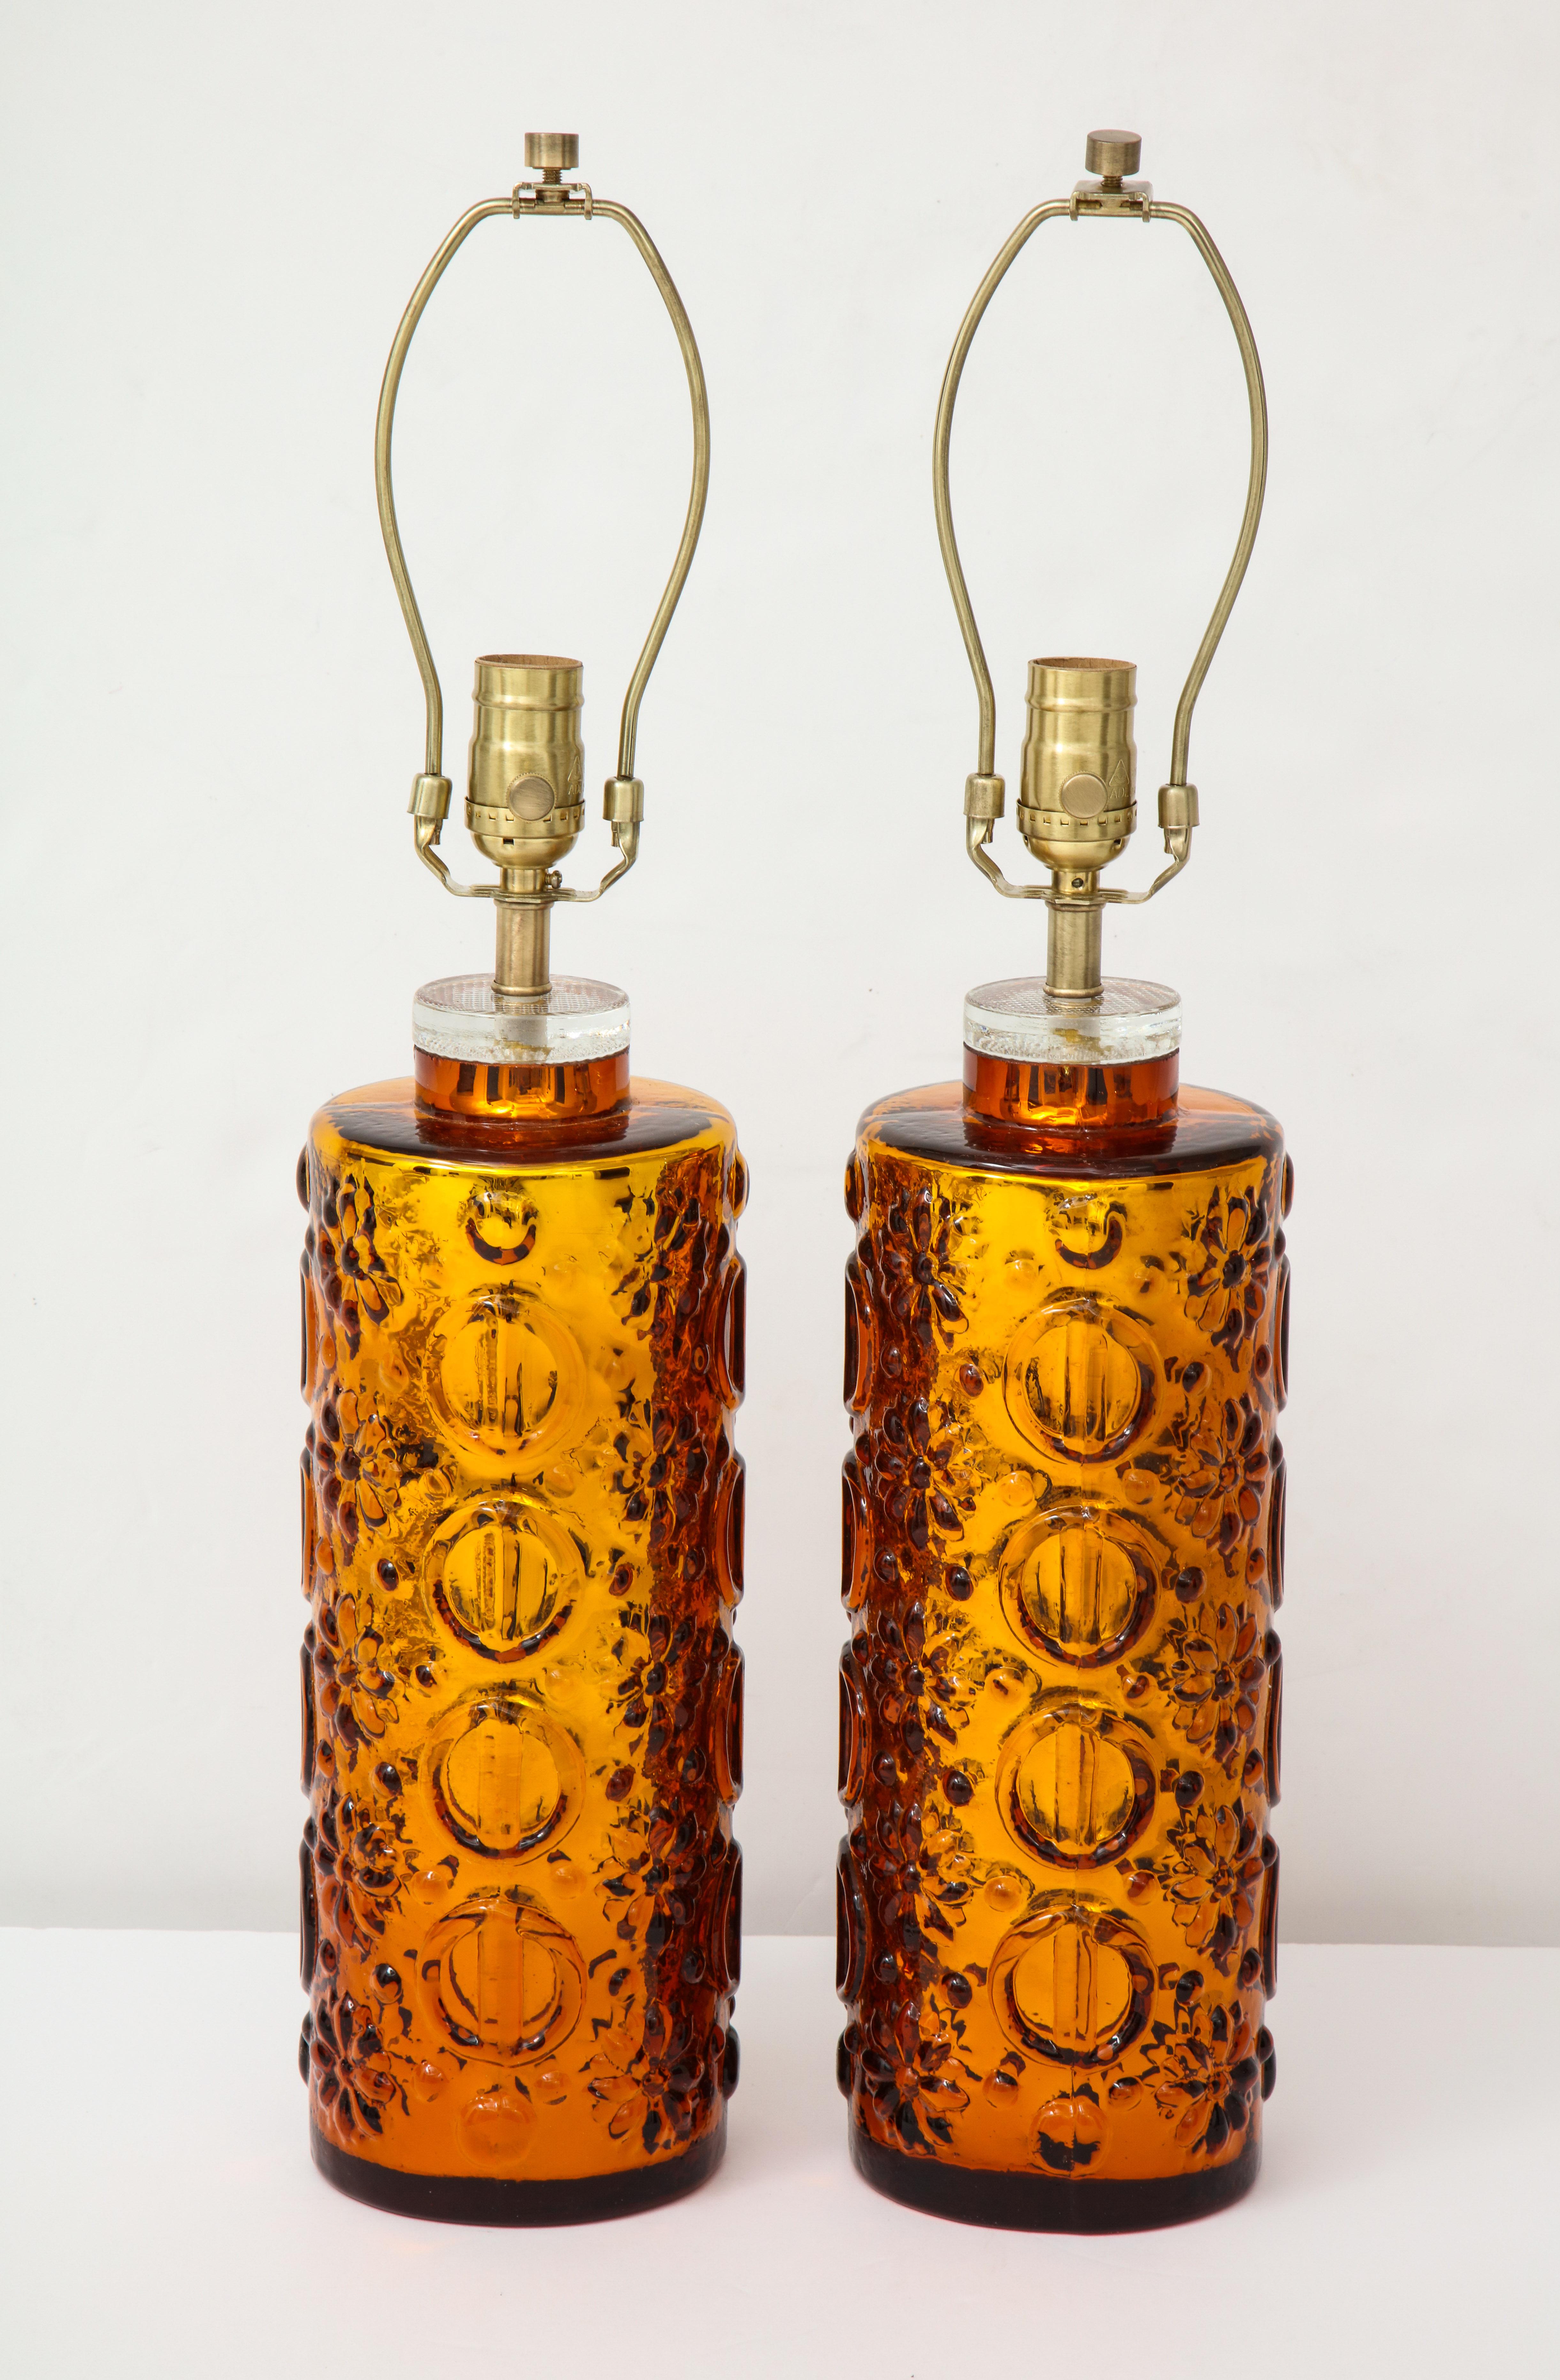 Ein Paar skandinavisch-moderne Lampen aus schwerem, geformtem Glas mit goldenem Quecksilberglas im Inneren und einem grafischen Muster auf dem klaren Glas. Für die Verwendung in den USA neu verdrahtet. 100W max Glühbirnen.